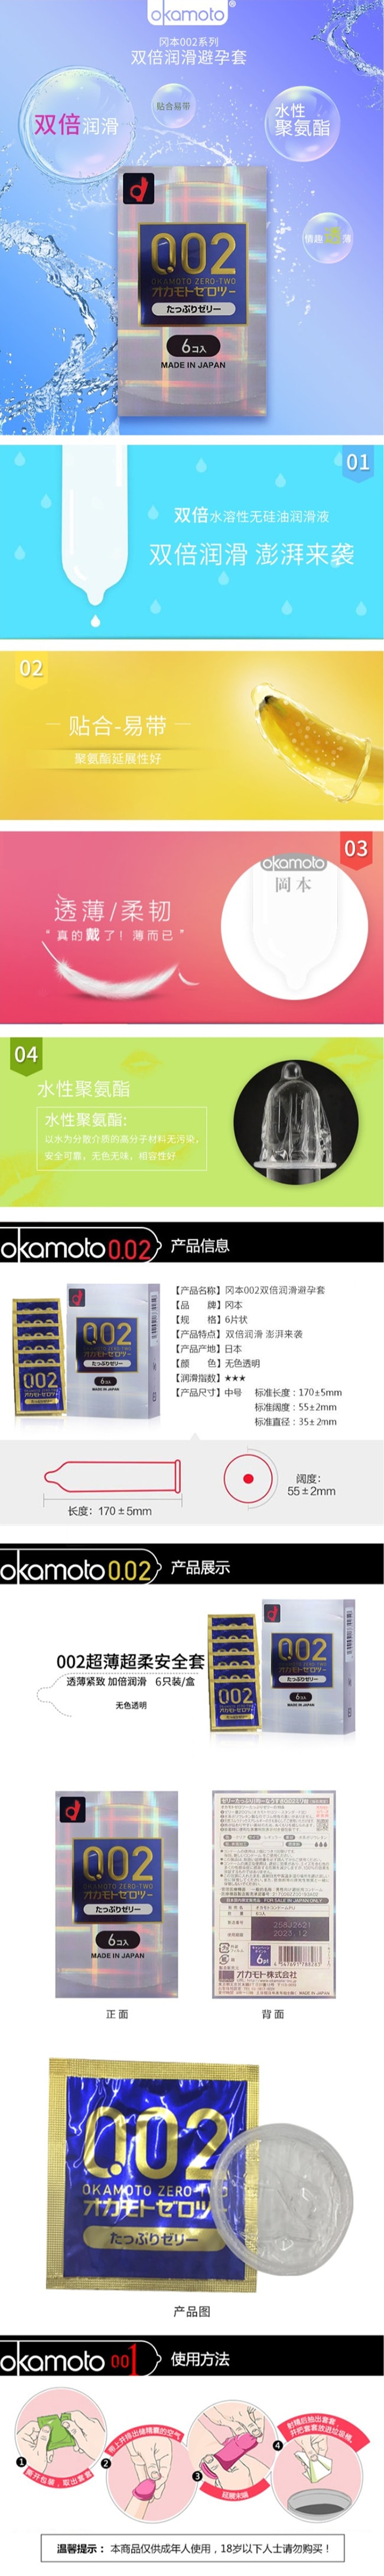 【日本直邮】OKAMOTO冈本 002双倍润滑版安全套避孕套 6只装